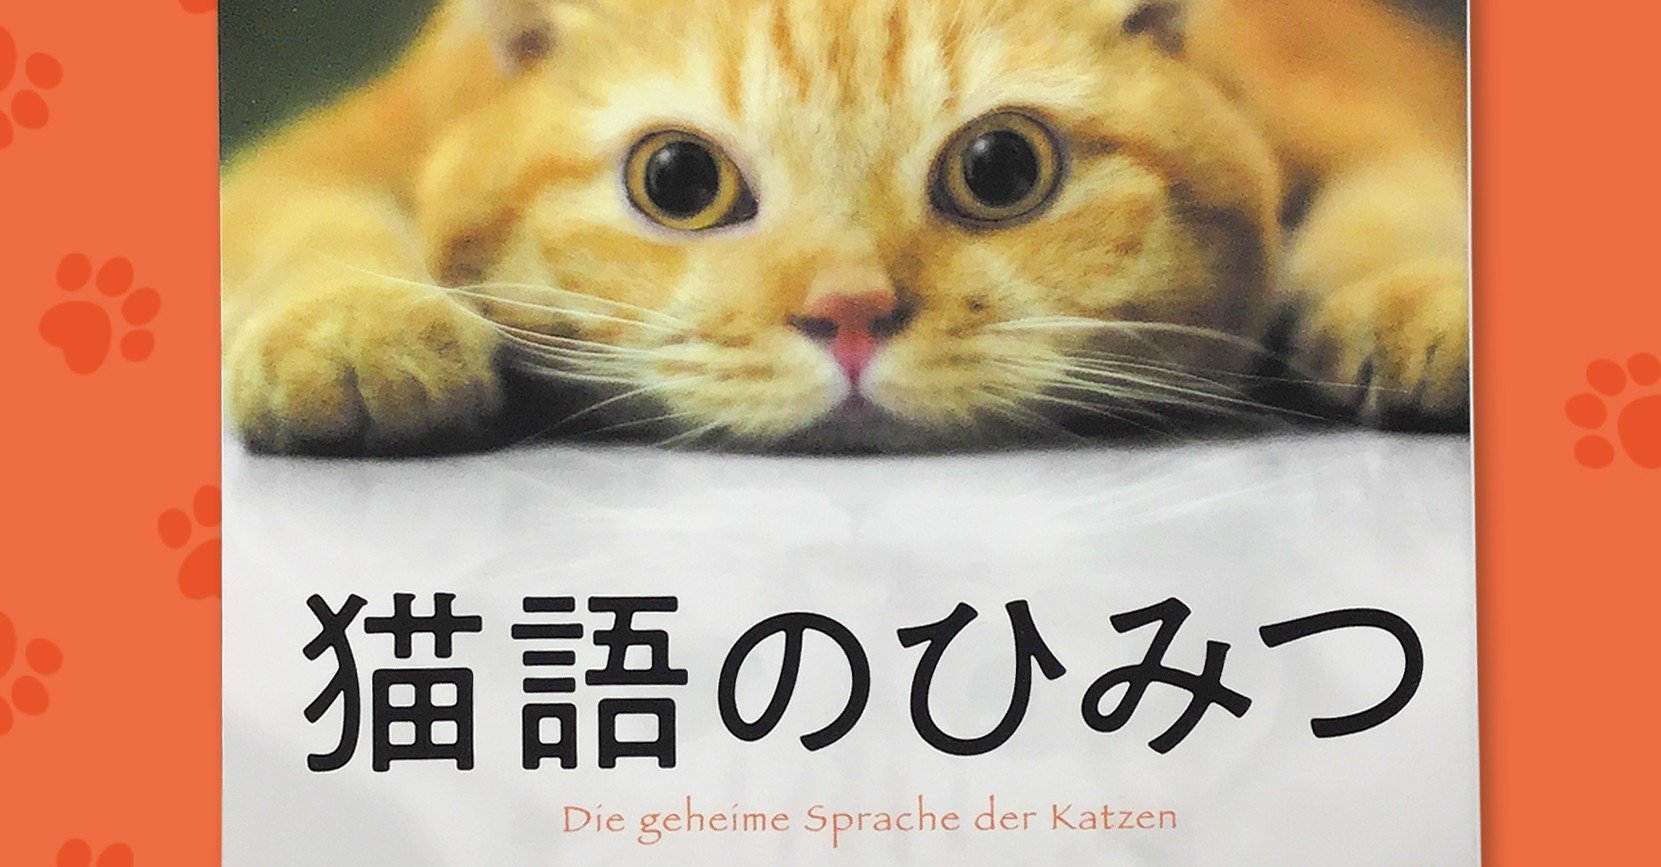 我々が話しかければかけるほど 猫たちはおしゃべりになる ハーパーコリンズ ジャパン Note